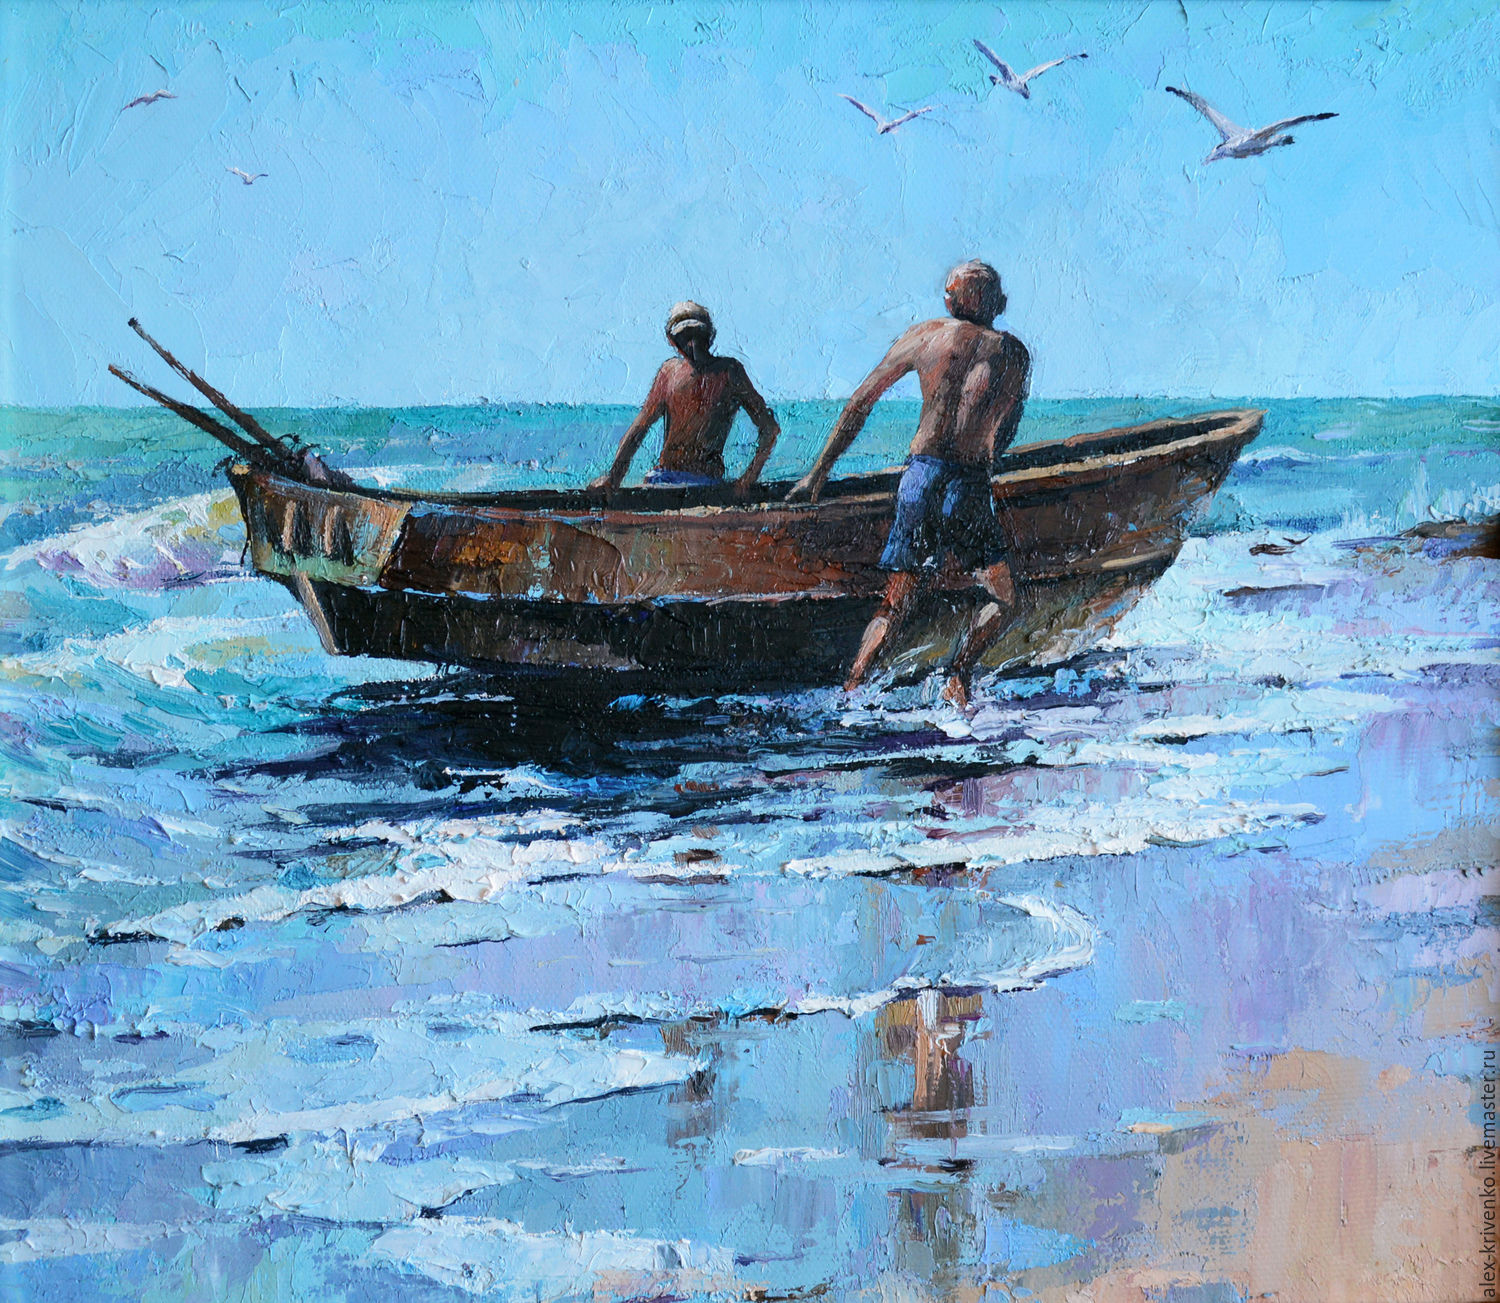 Произведение лодка. Лодки живопись. Рыбацкие лодки живопись. Картина лодка. Лодки картины художников.